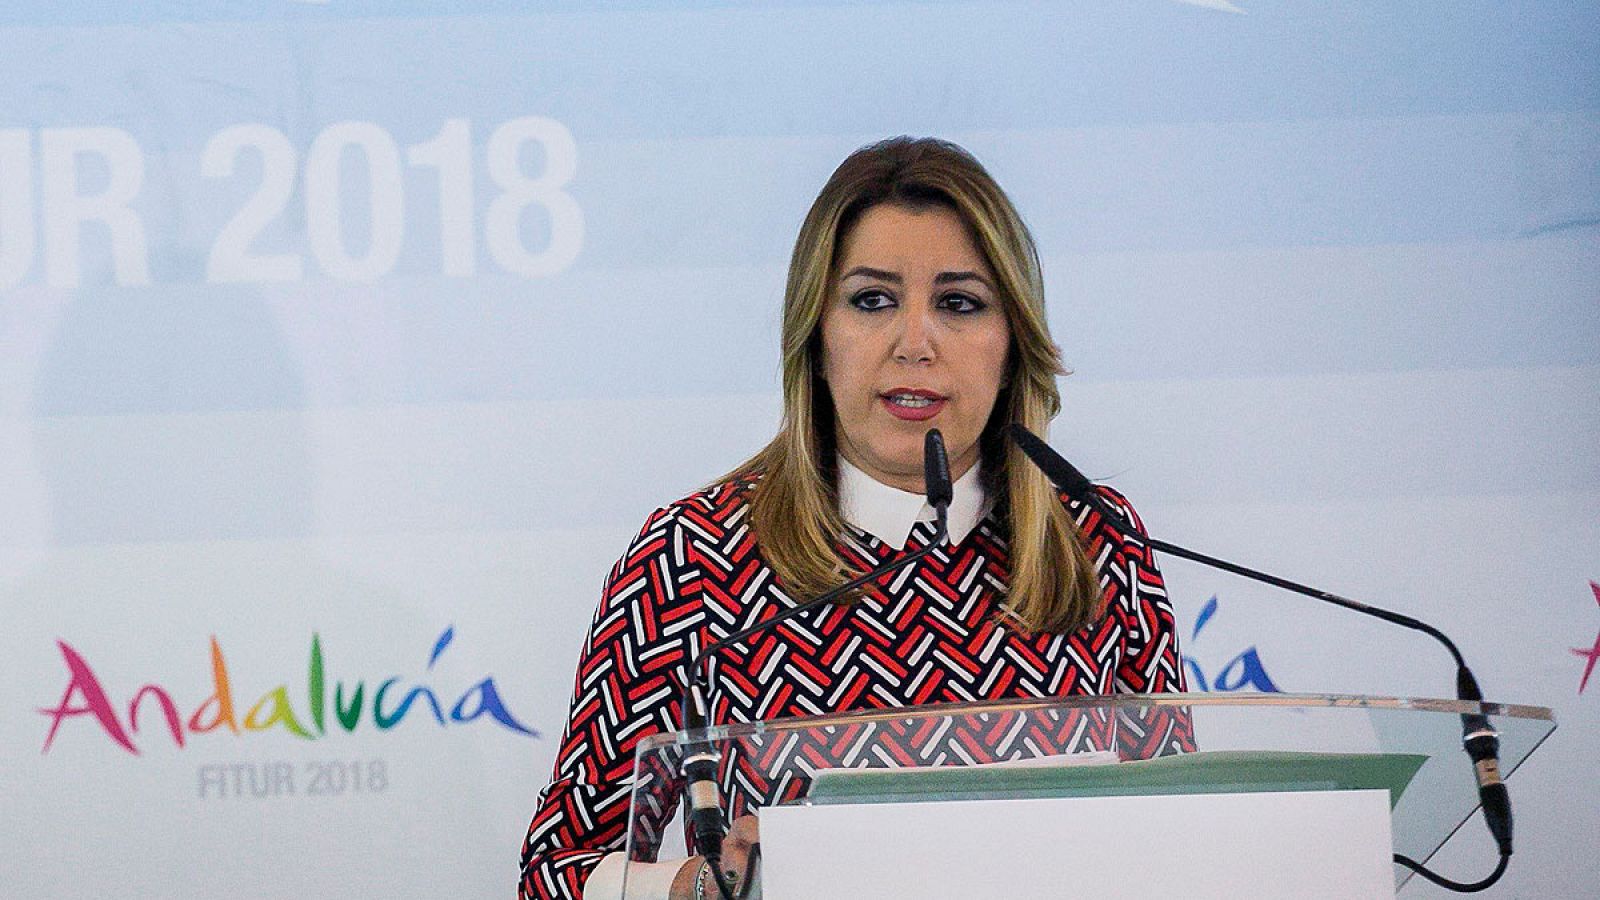 La Presidenta de la Junta de Andalucía, Susana Díaz, durante la rueda de prensa en la inauguración del pabellón de Andalucía en FITUR 2018.